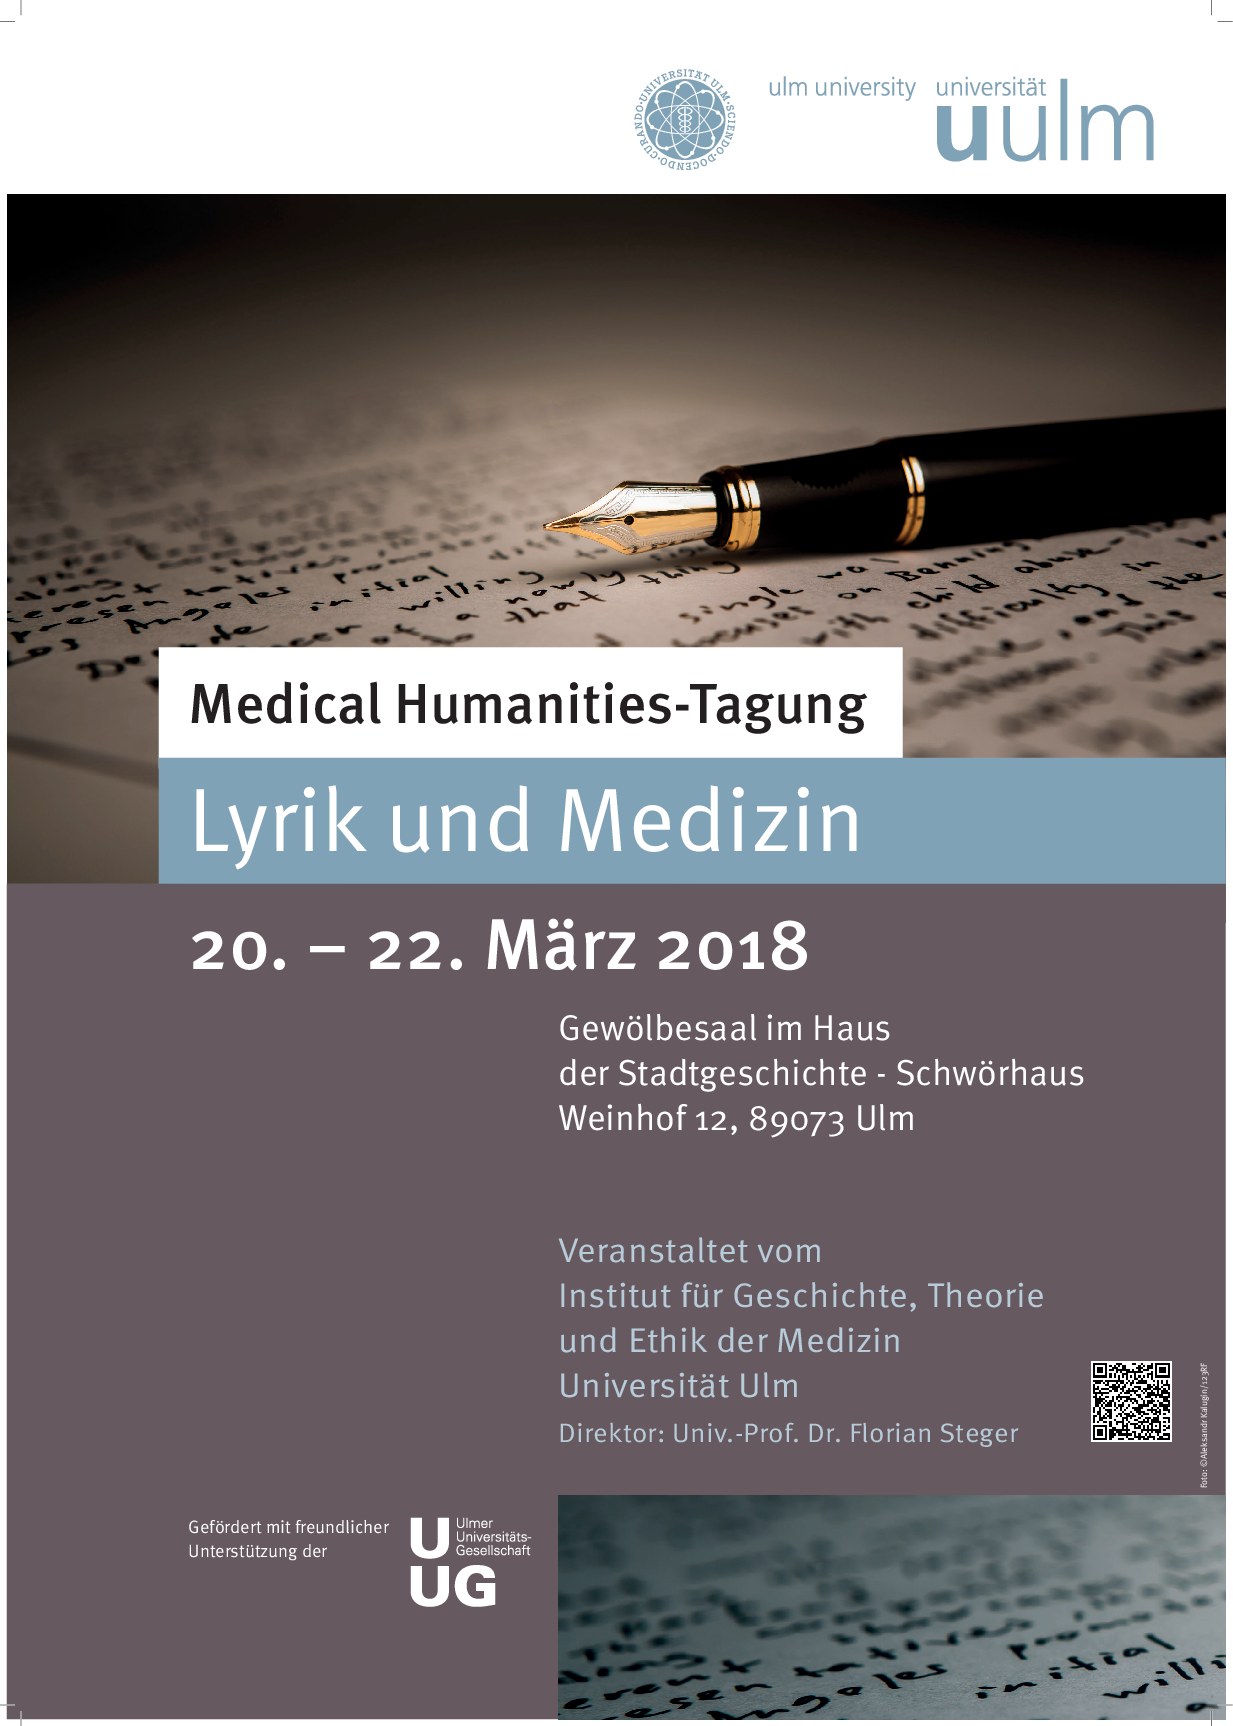 Poster Lyrik und Medizin